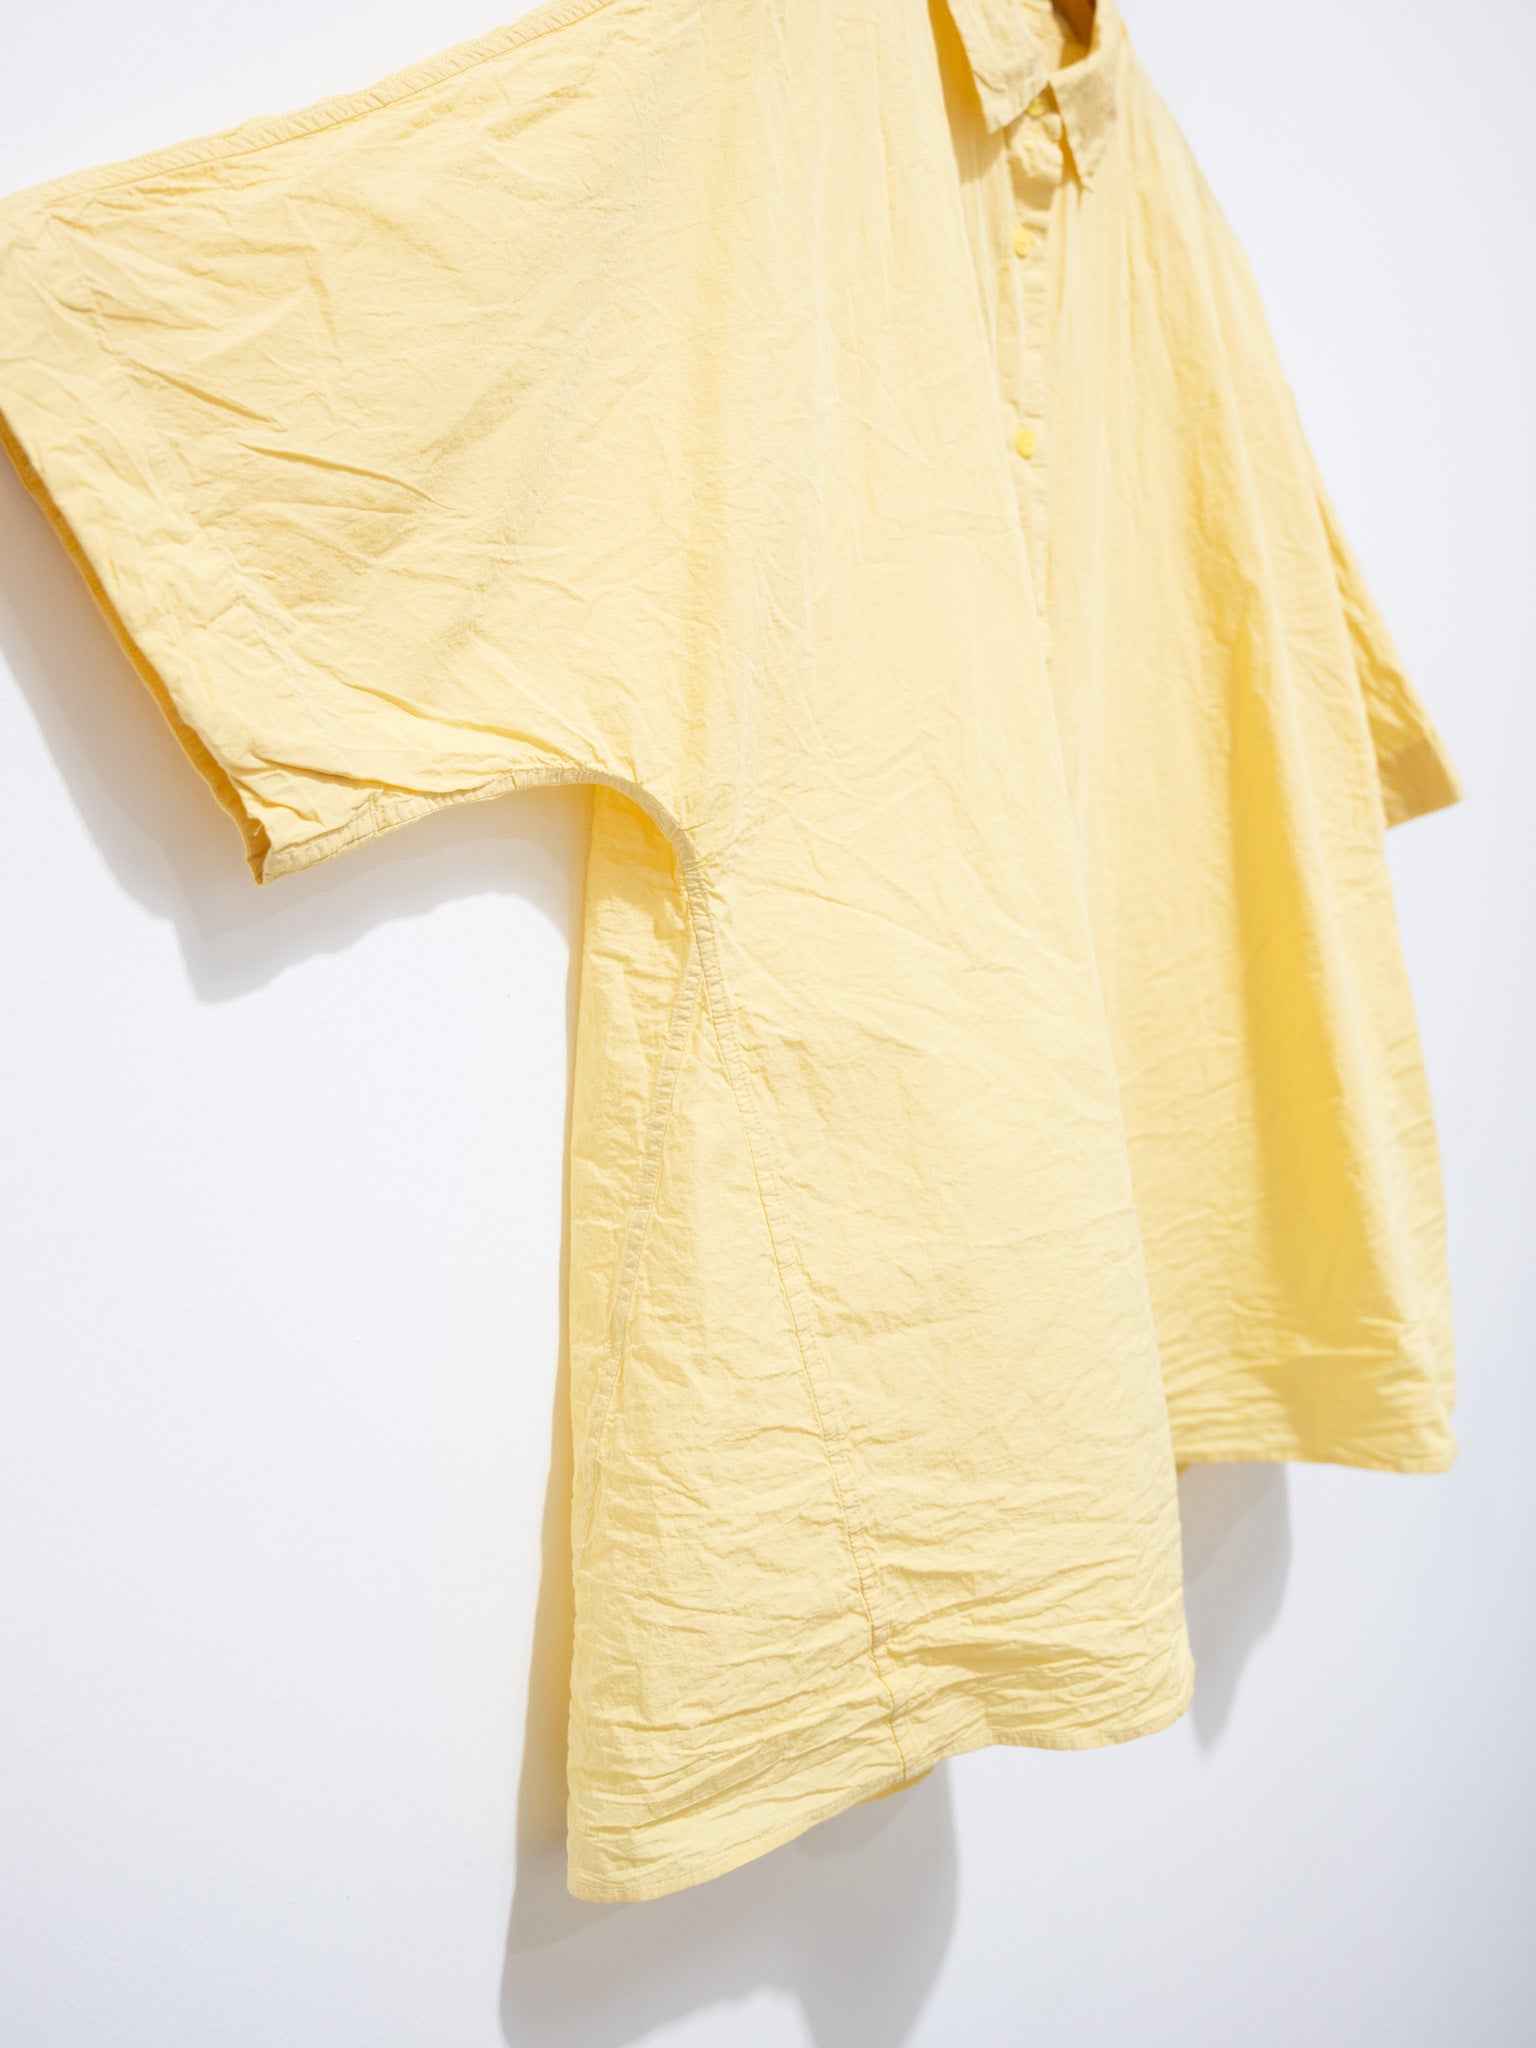 Namu Shop - Casey Casey Waga Soleil Shirt Light Paper - Butter